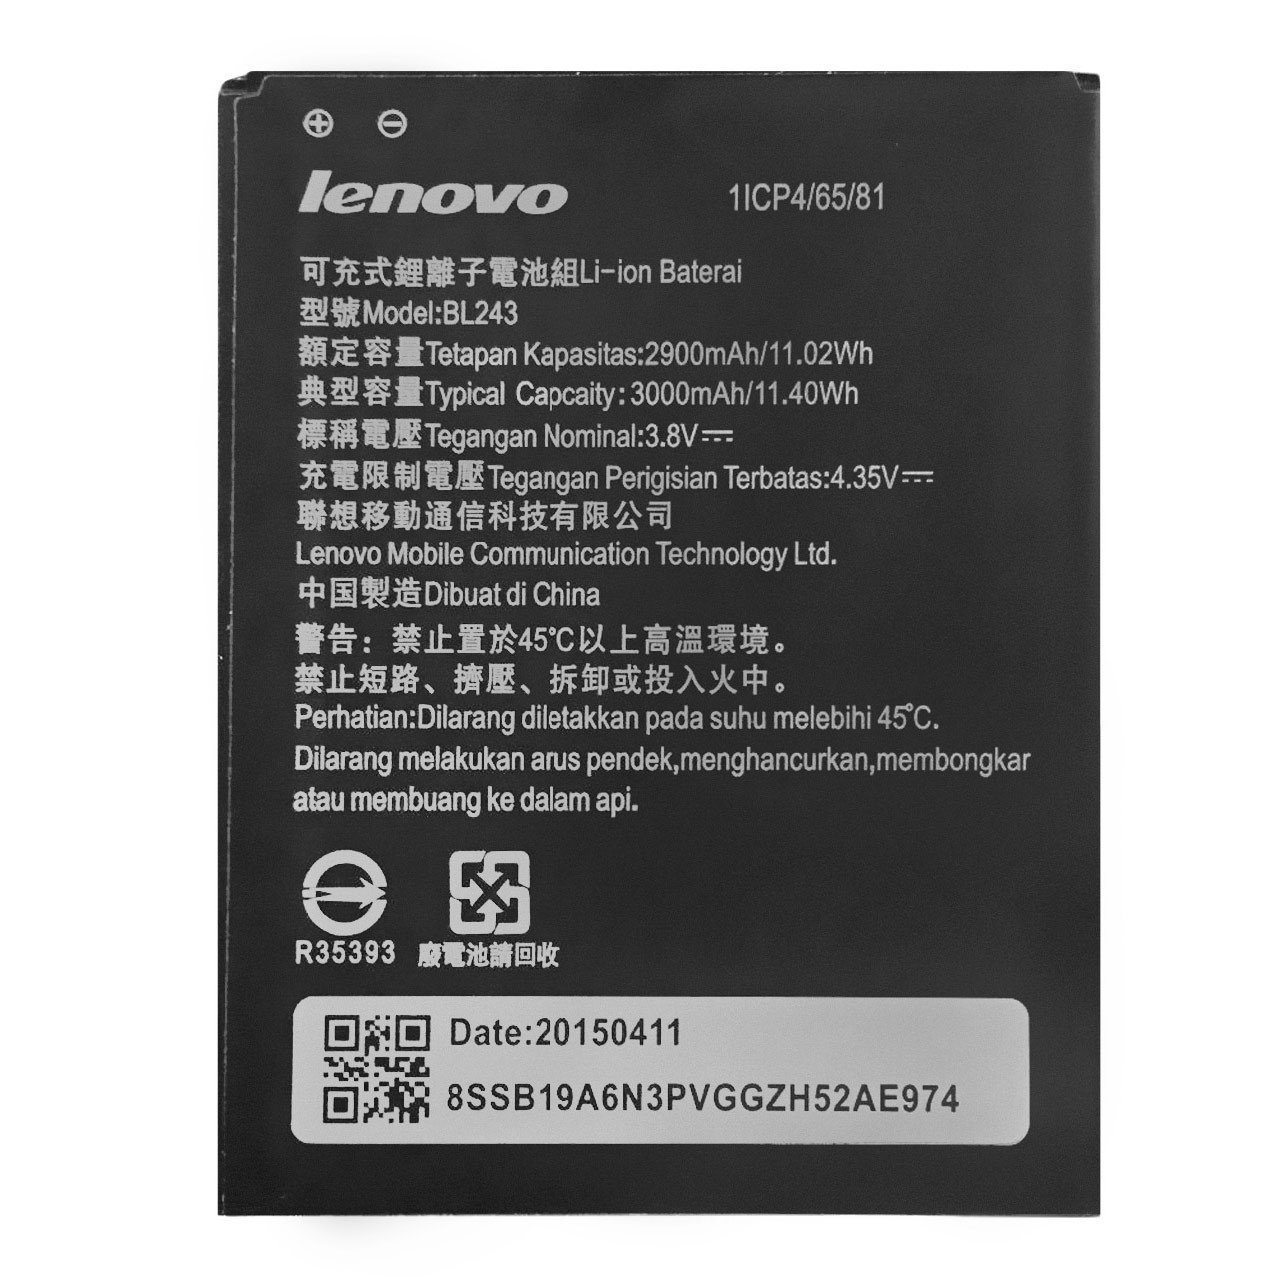 باتری موبایل لنوو مدل BL243 با ظرفیت 2900mAh مناسب برای گوشی های موبایل لنوو A7000